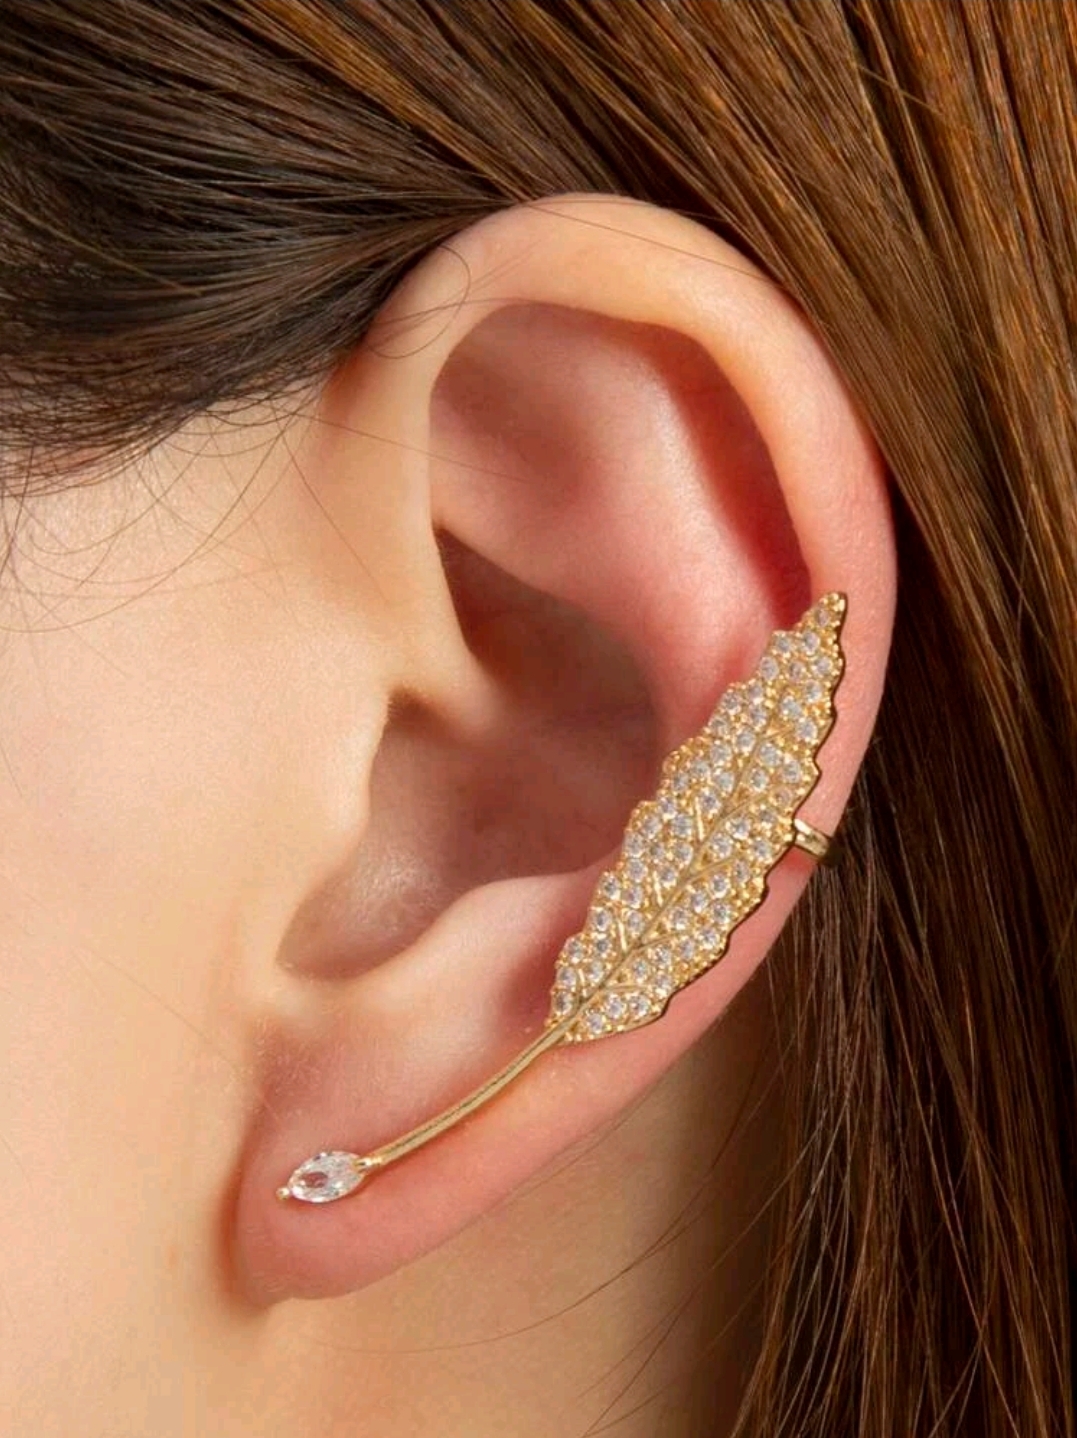 SHEIN metal hoop earrings, Women's Fashion, Jewelry & Organisers, Earrings  on Carousell